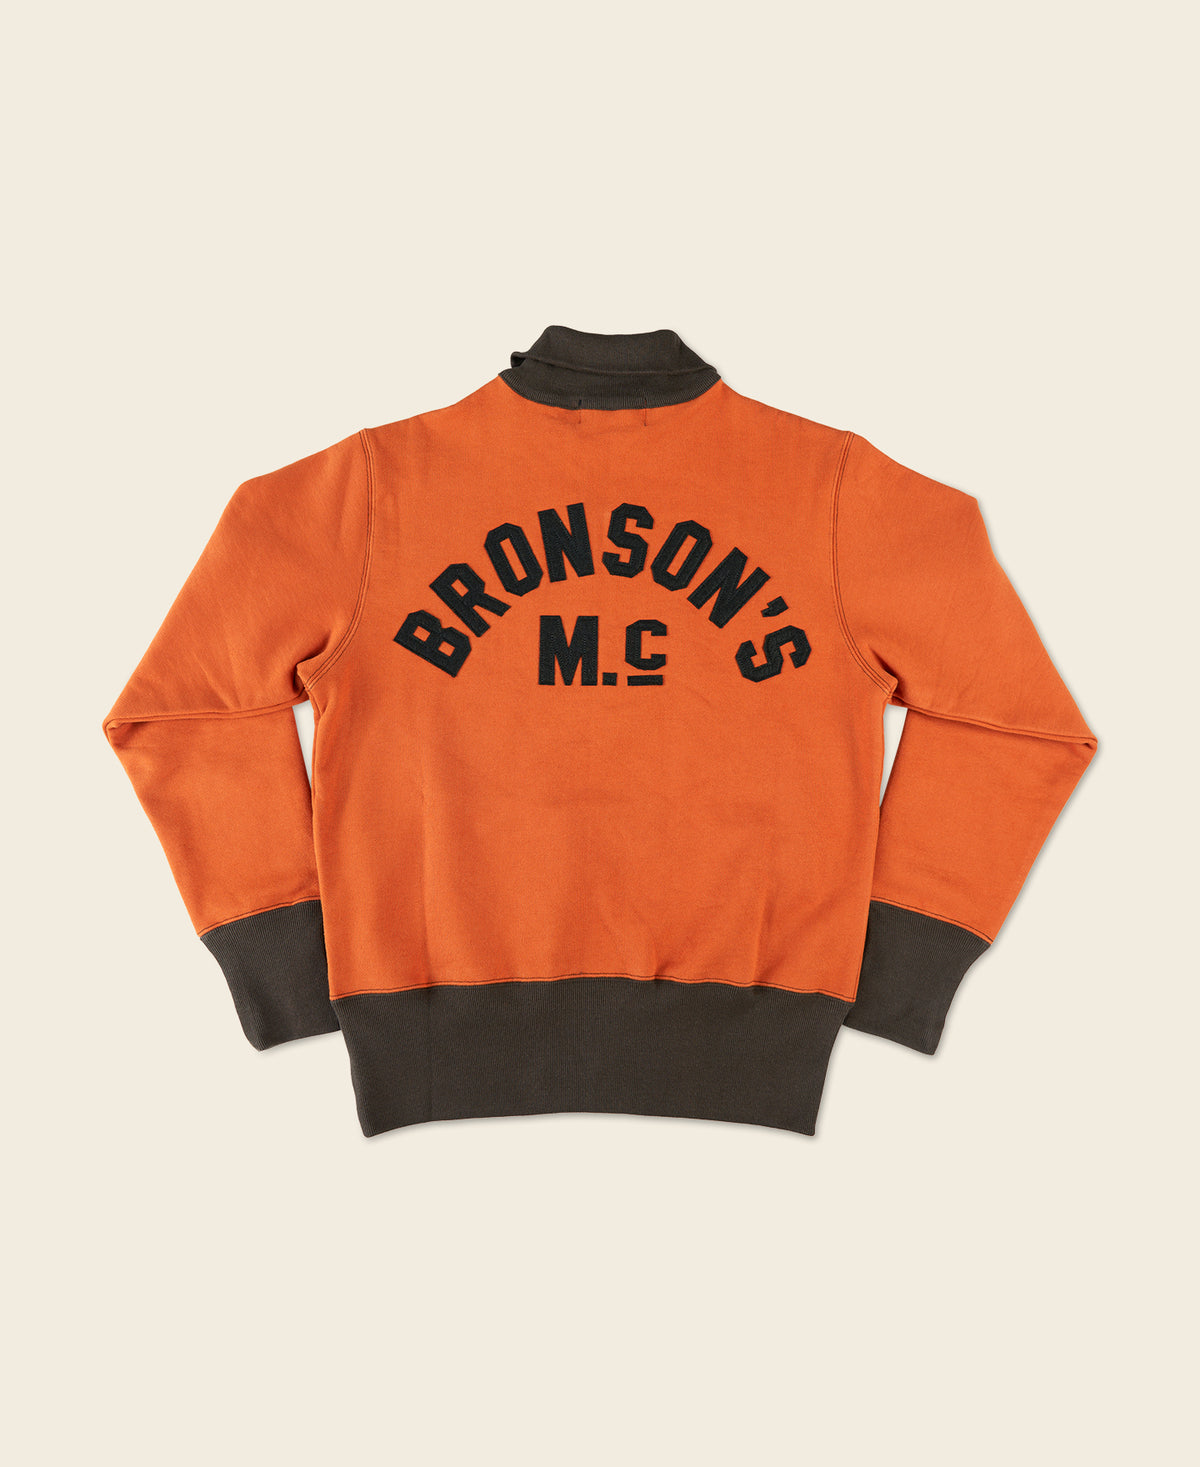 1920s Drinking Team Motorcycle Racing Sweatshirt - Orange